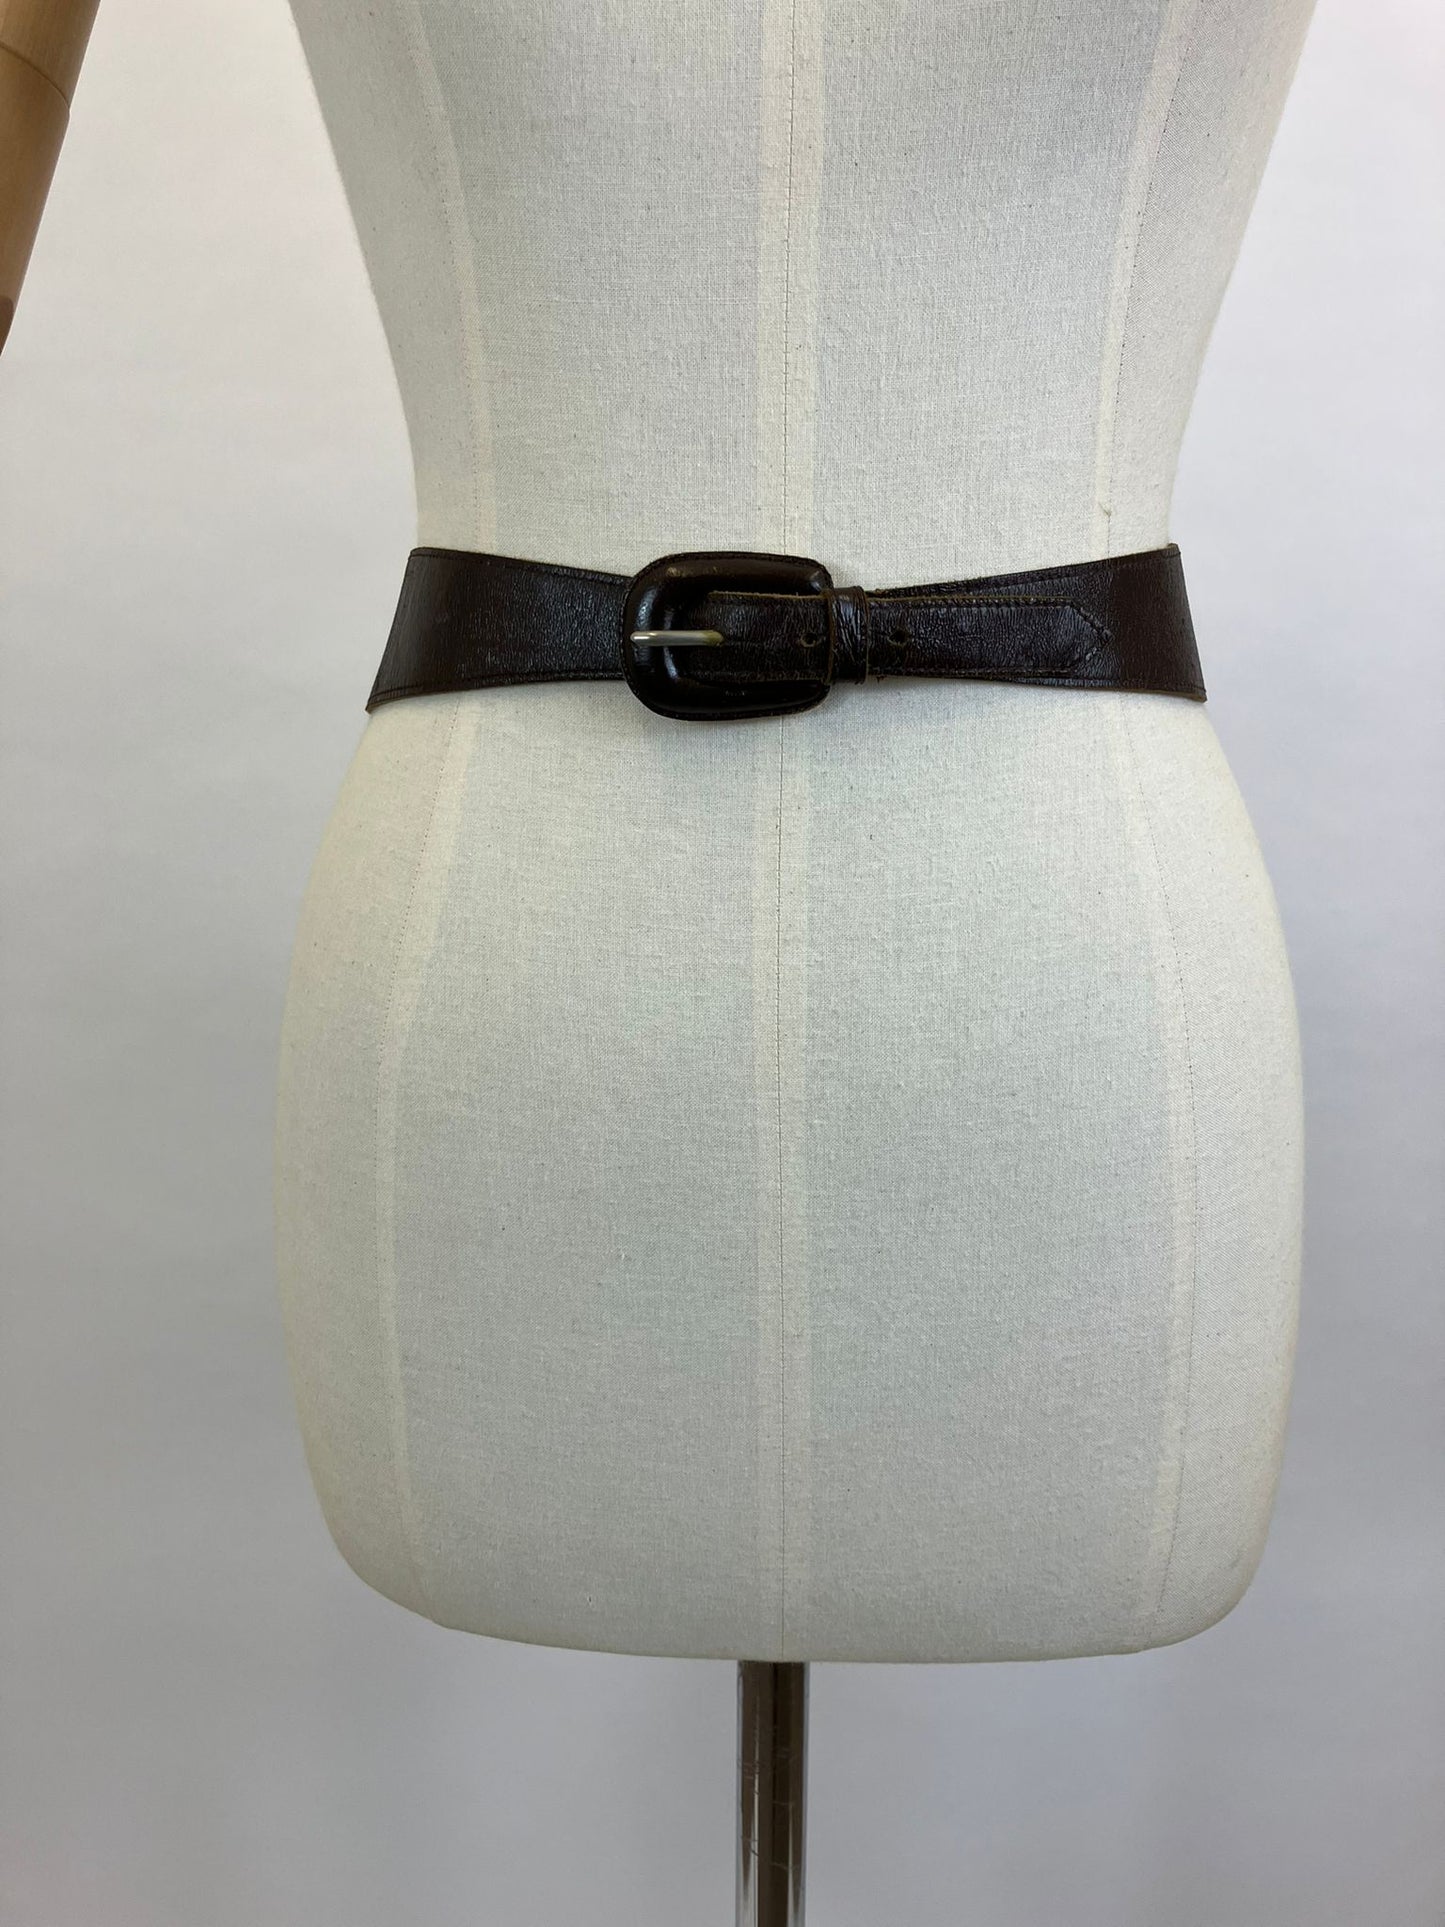 Original 1940’s Leather Belt - Dark Brown